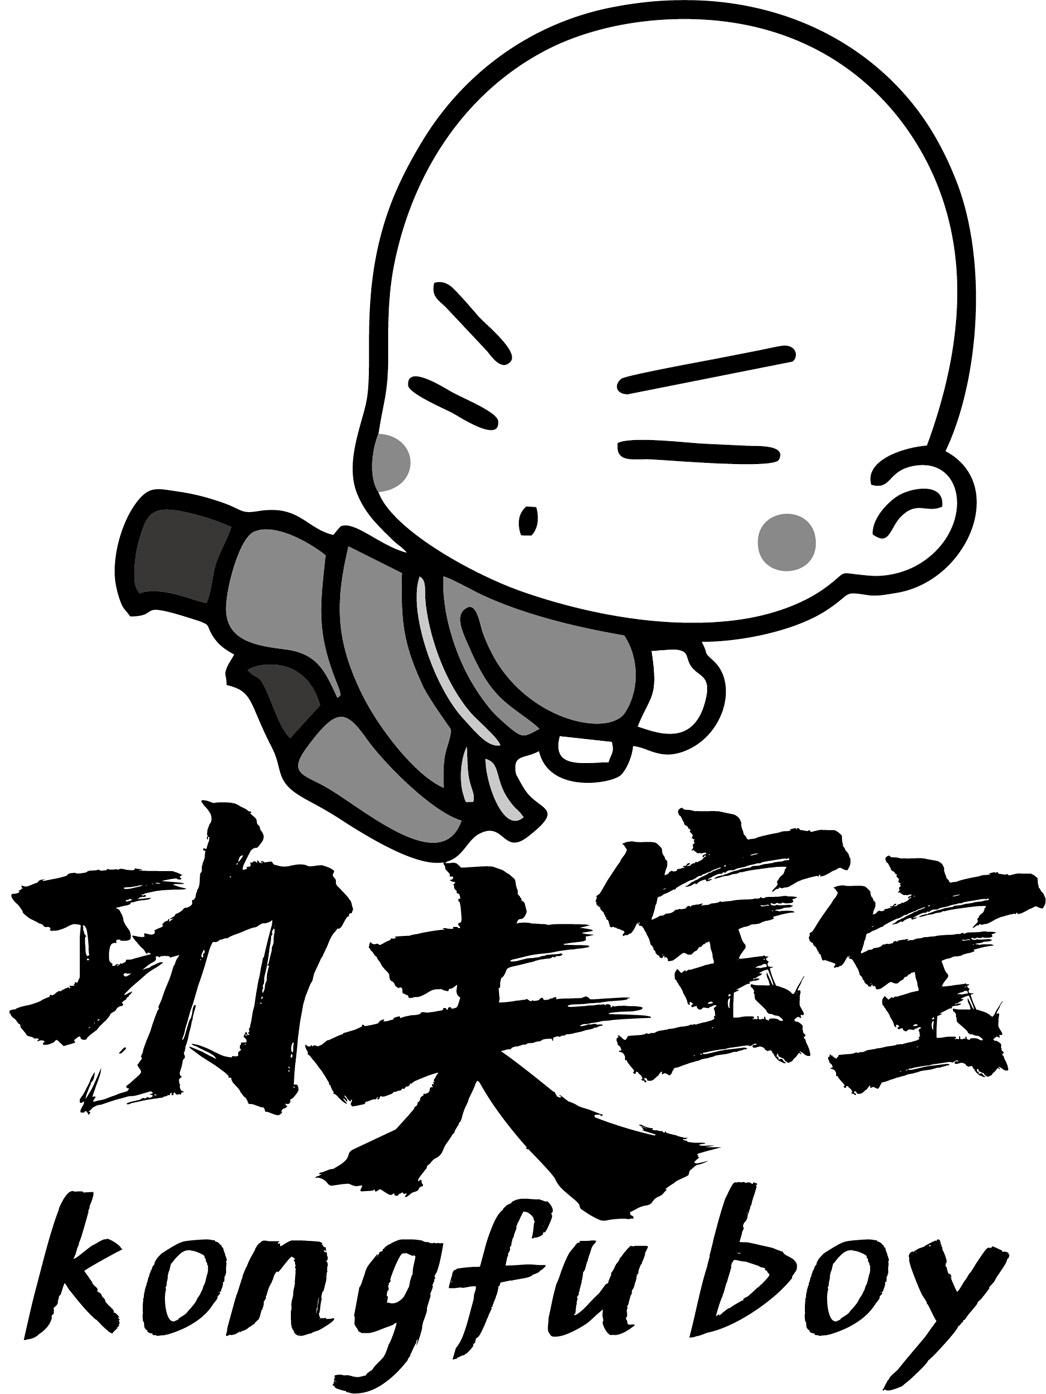 功夫动漫logo图片